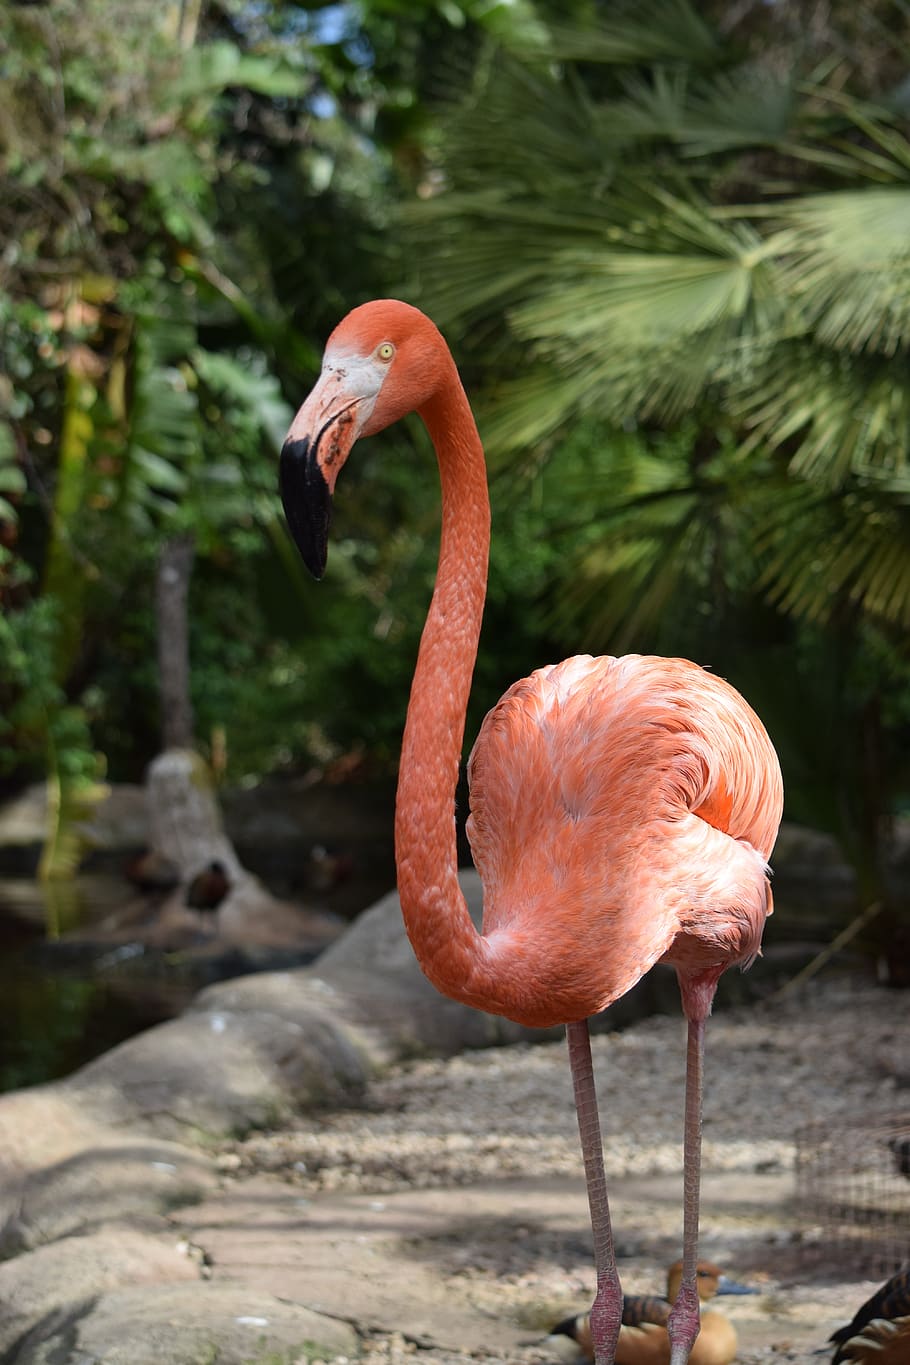 Flamingo, merah muda, burung, telapak tangan, hewan, tropis, alam, satwa liar, eksotis, bulu